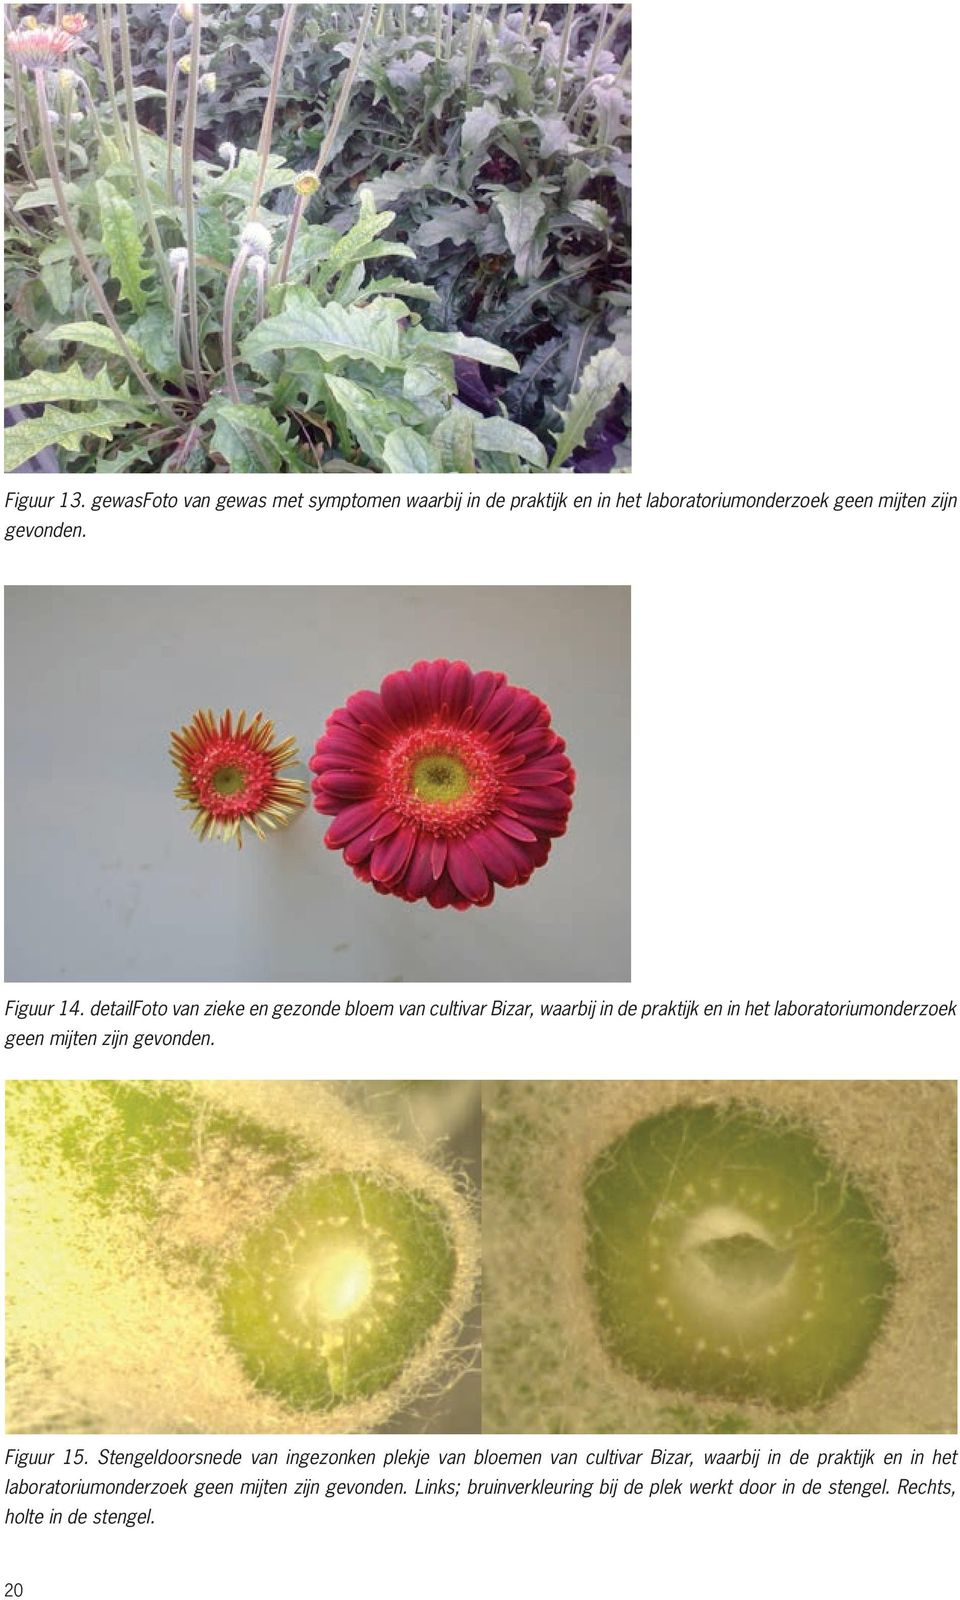 14: detailfoto detailfoto van van zieke zieke en en gezonde gezonde bloem bloem van cultivar van cultivar Bizar, Bizar, waarbij in de praktijk in de en praktijk in het en laboratoriumonderzoek in het